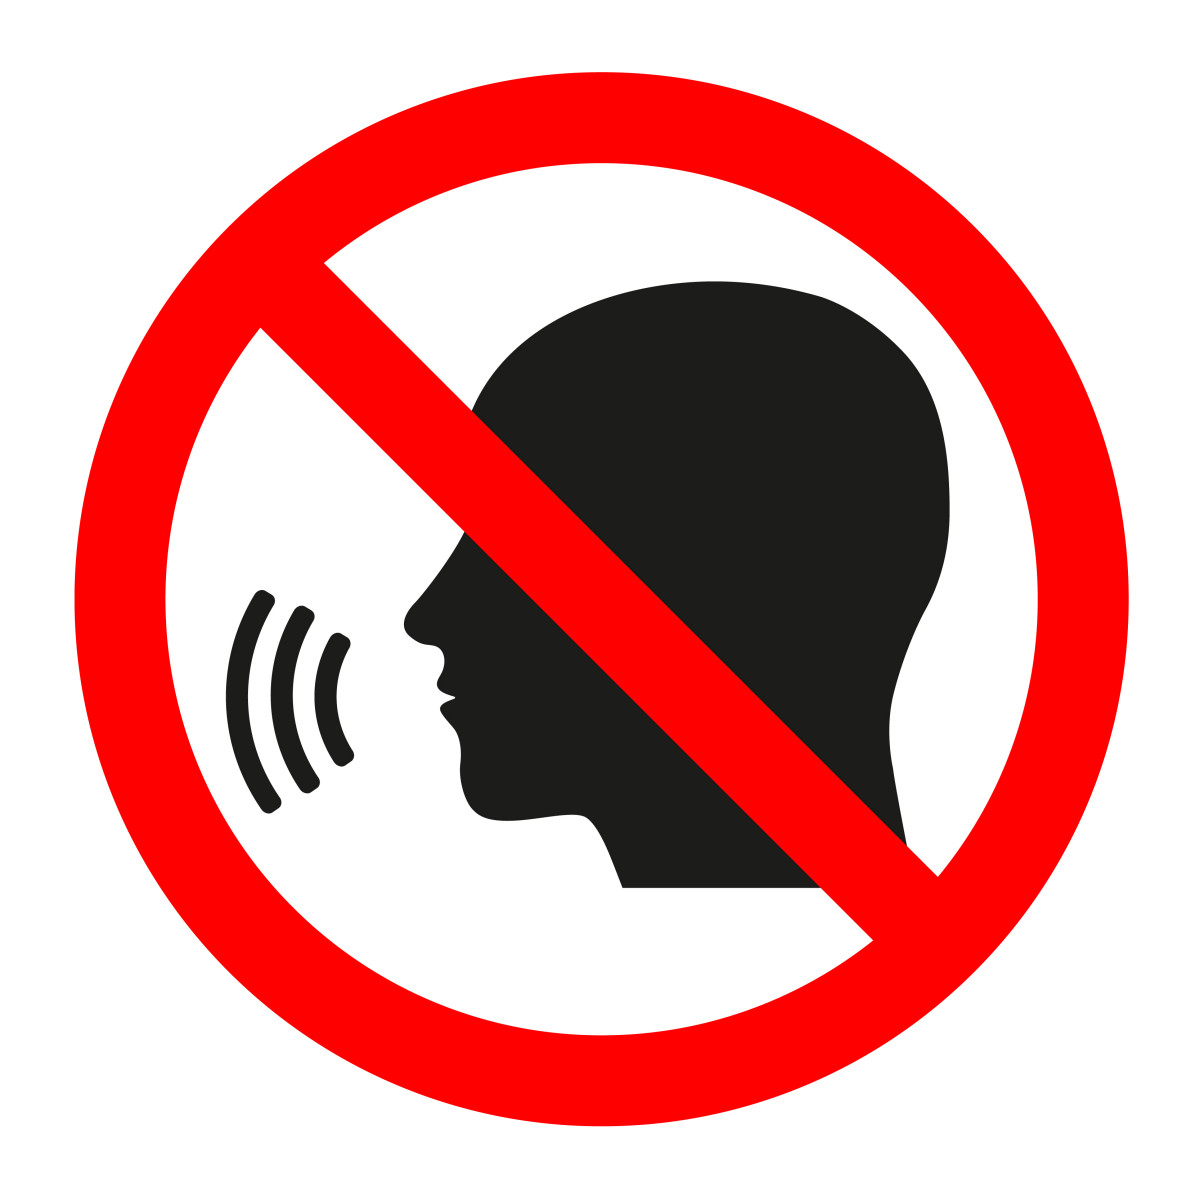 Censorship and forbidden speech warning sign uk internet